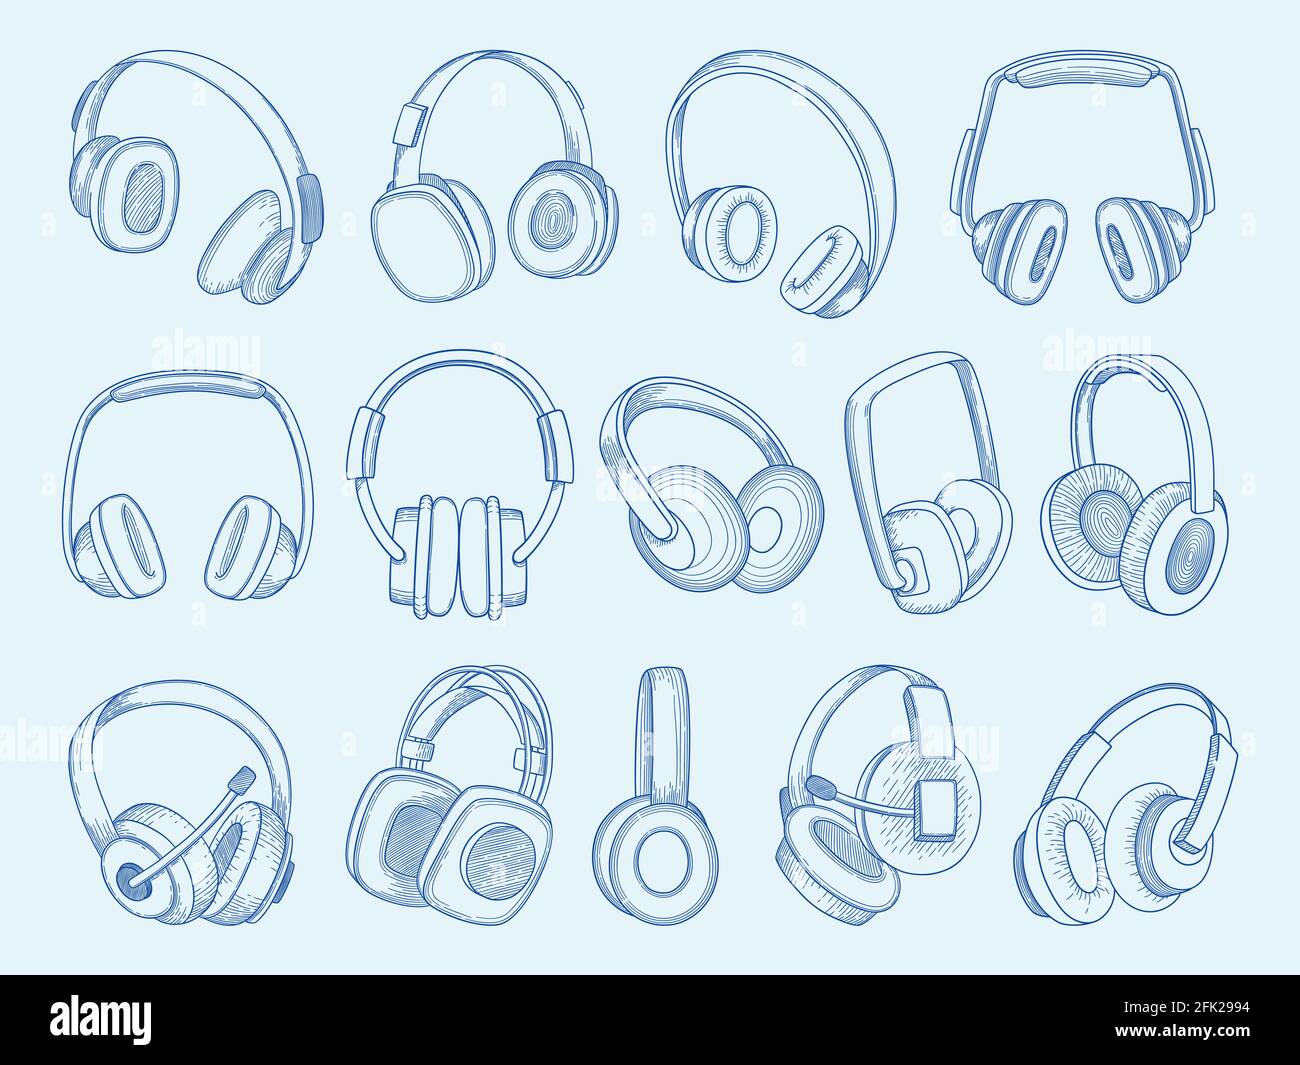 Auriculares. Tecnología inalámbrica equipo de comunicación música auriculares acústicos juego de boceto vectorial Ilustración del Vector